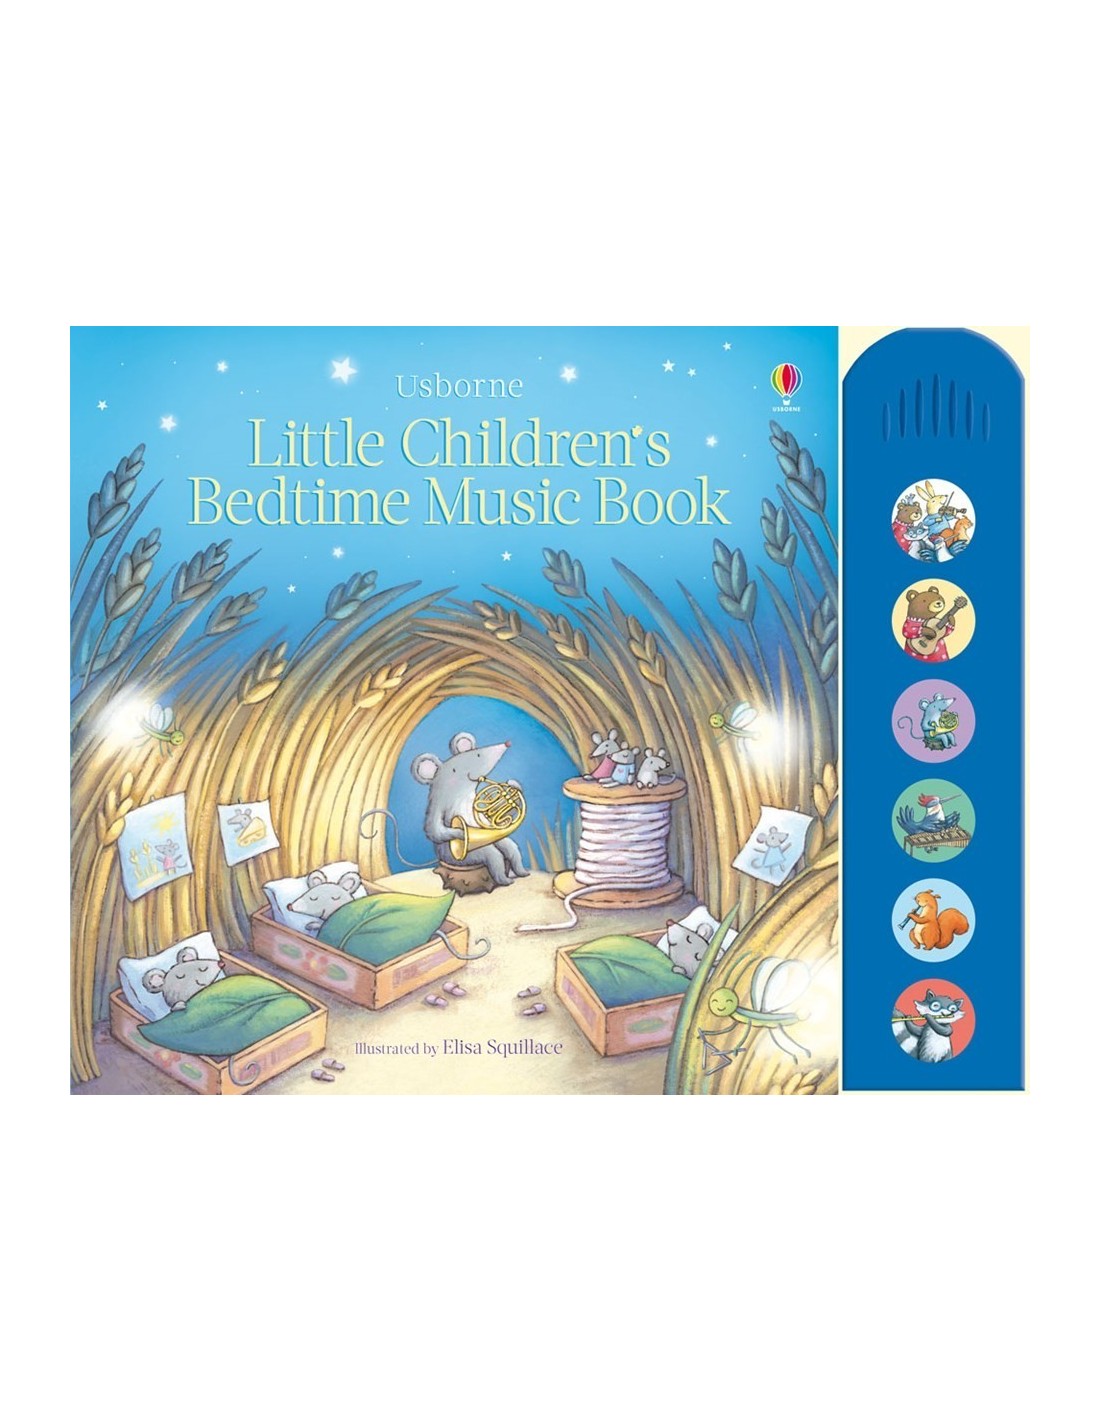 Little children's bedtime music book